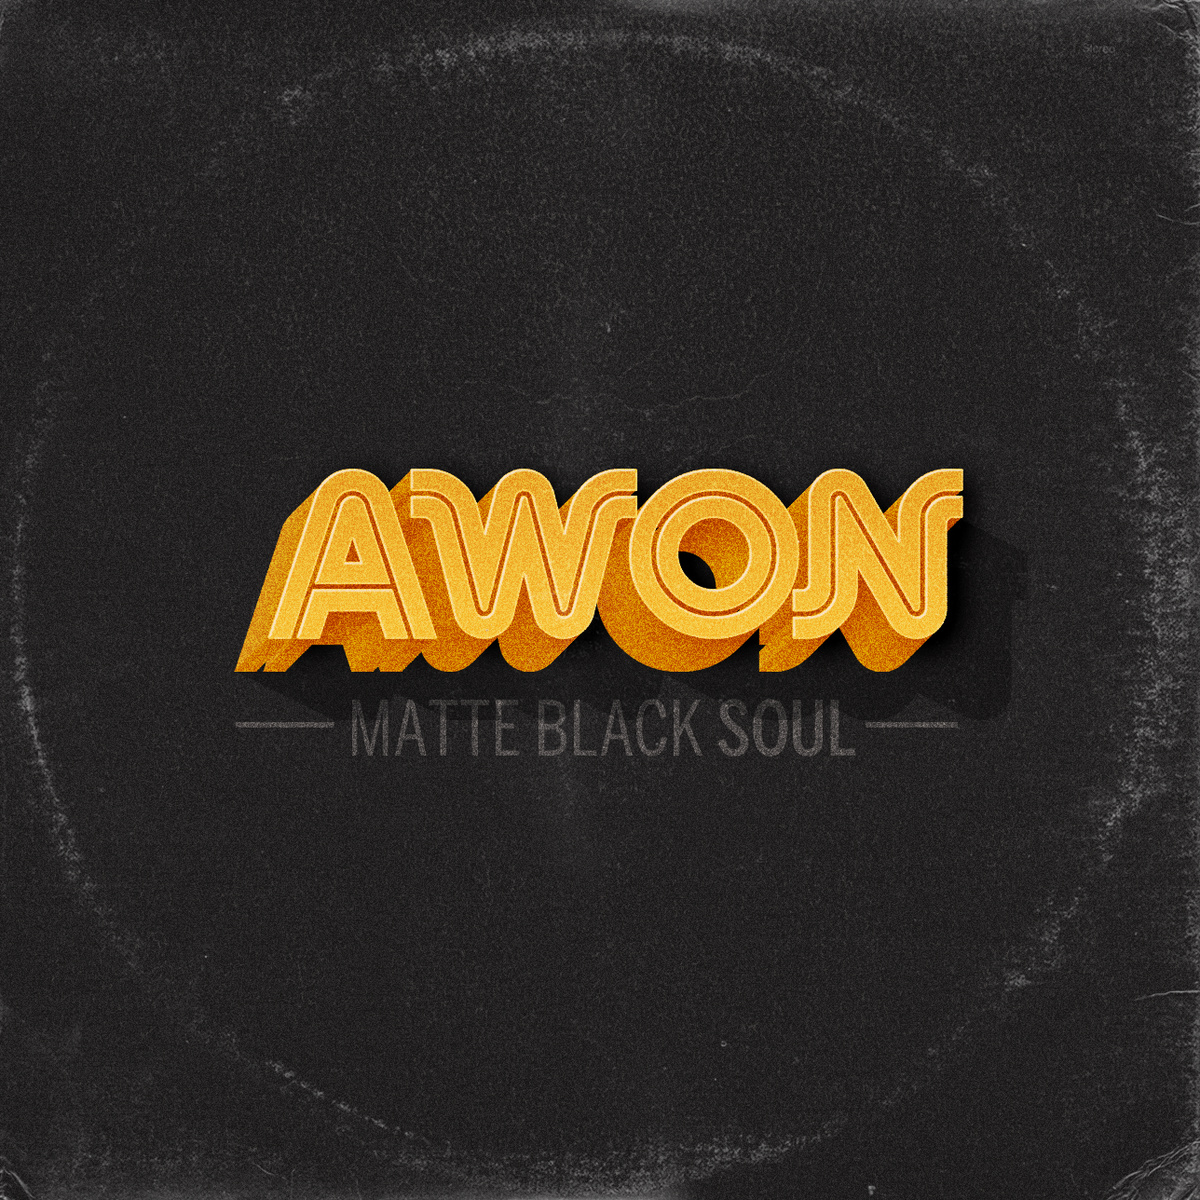 Listen: Awon – Matte Black Soul